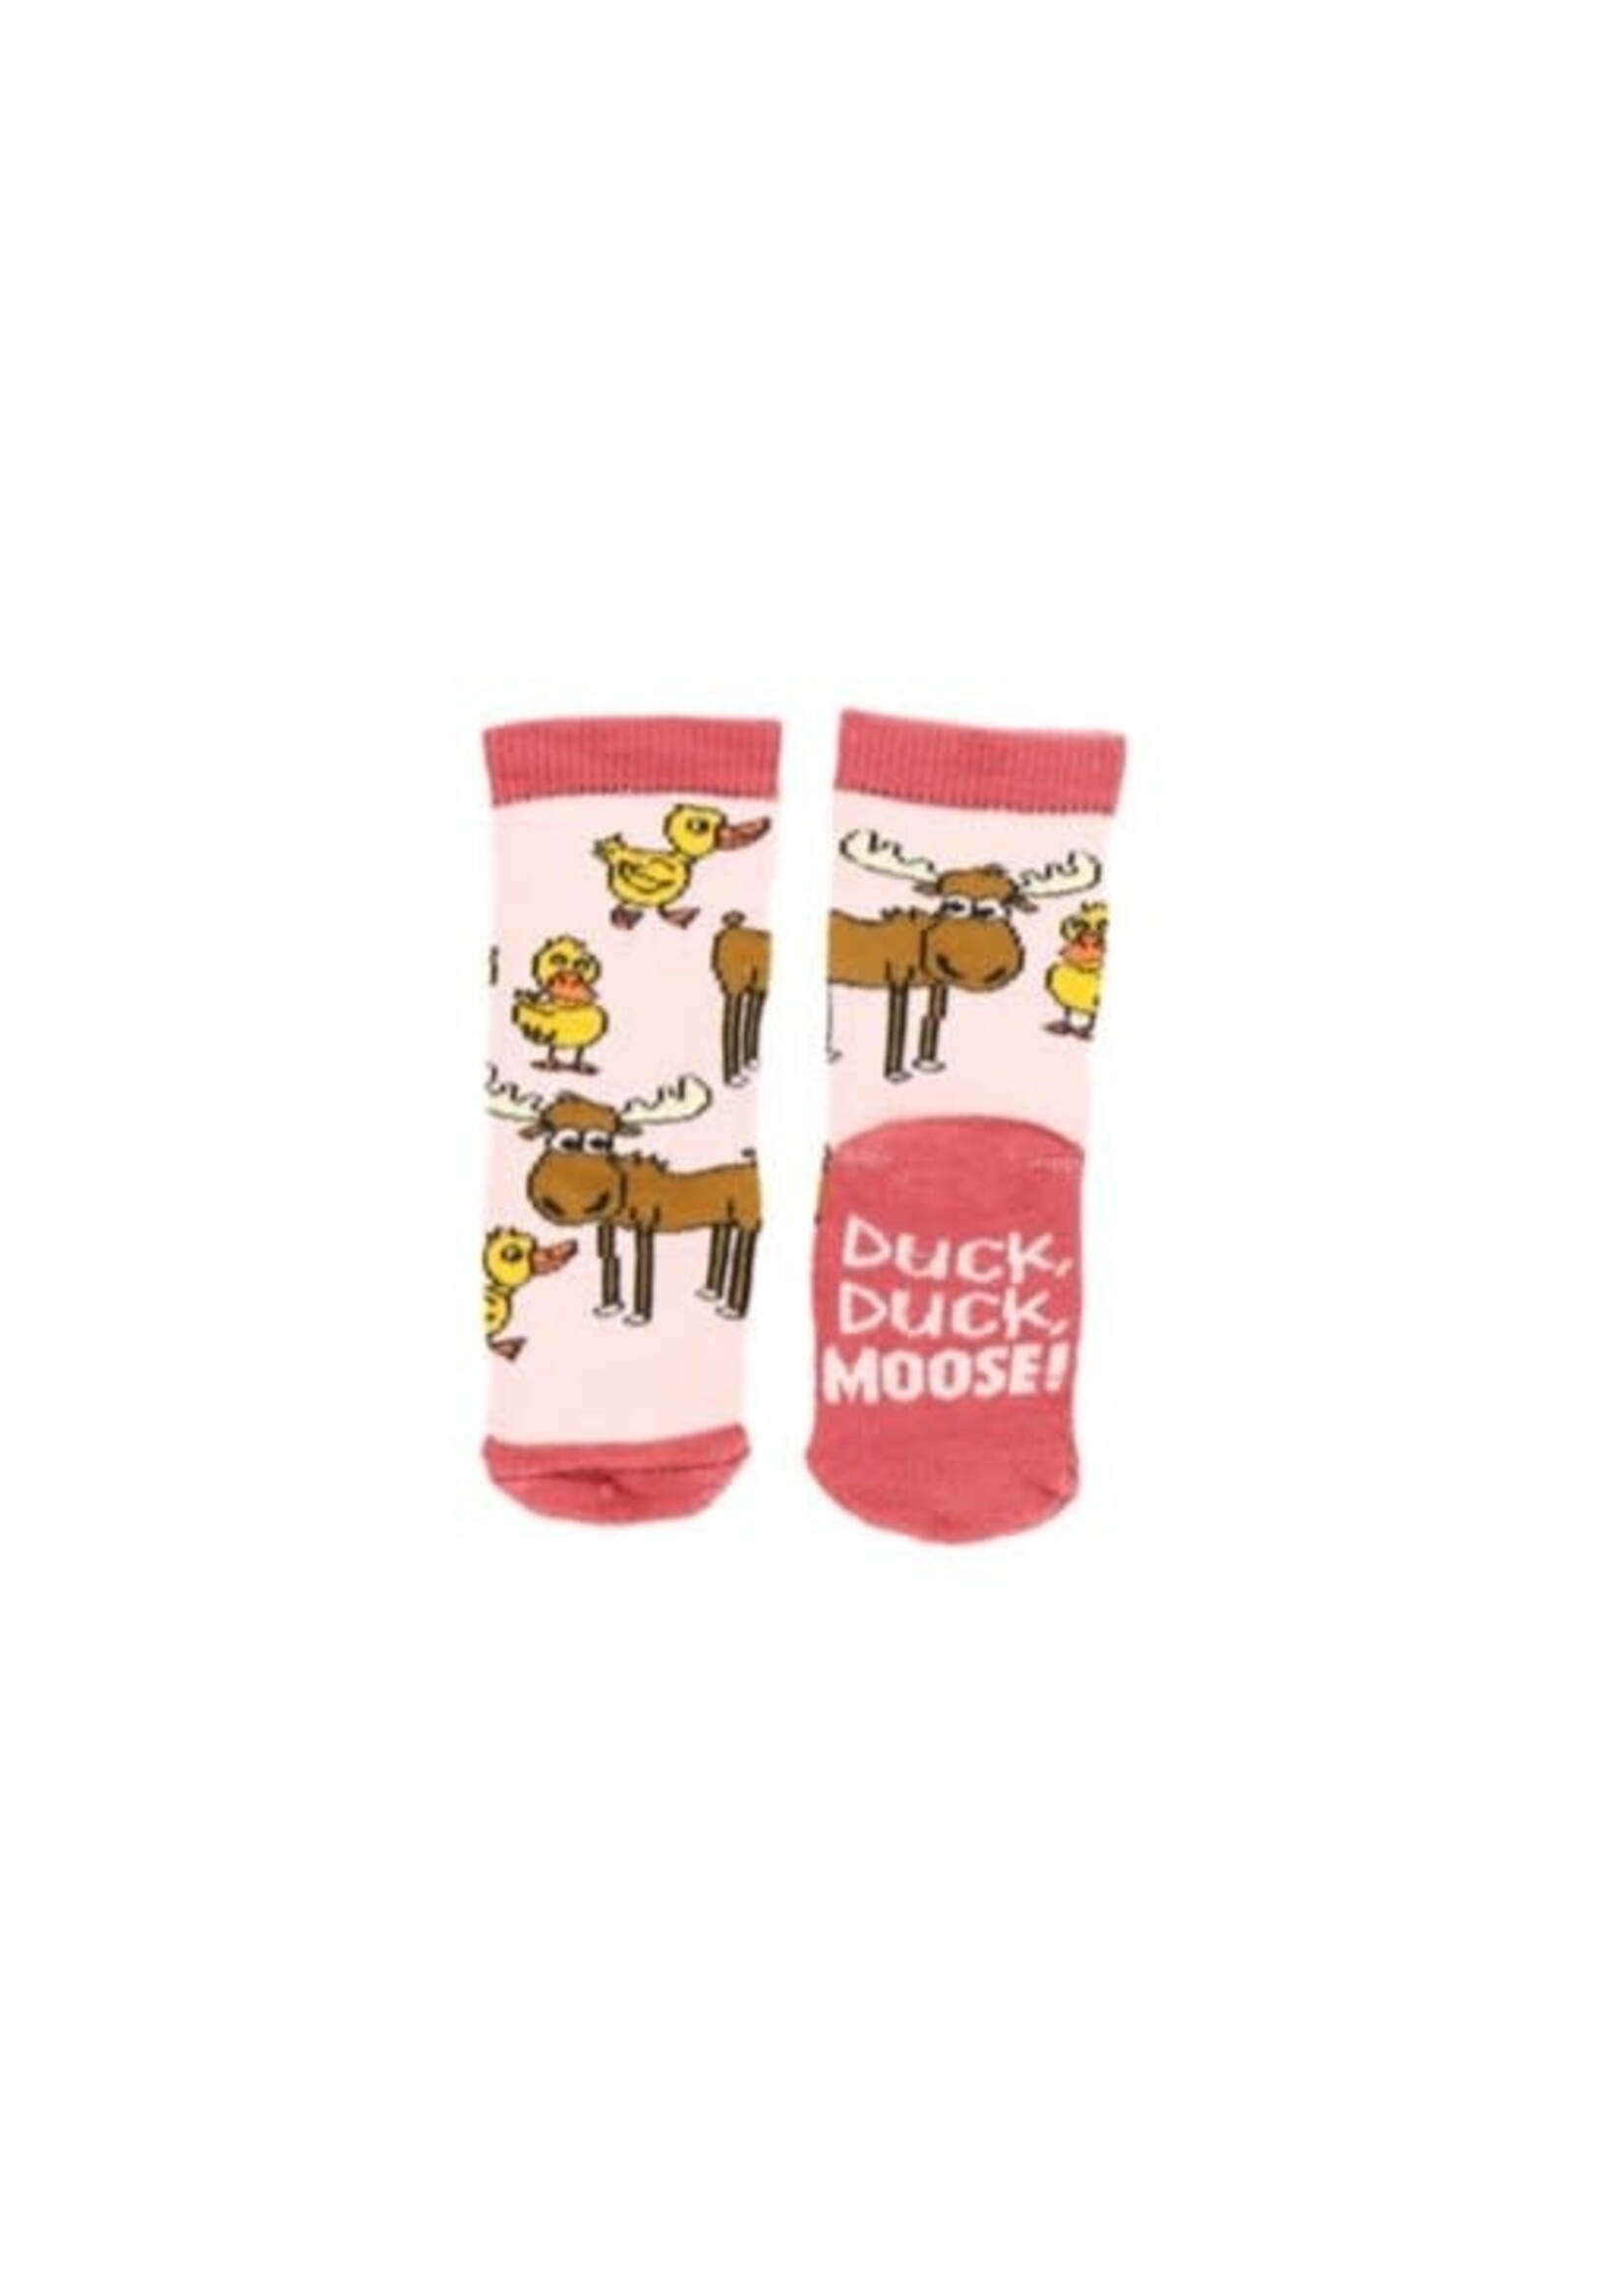 Duck, Duck, Moose! Socks